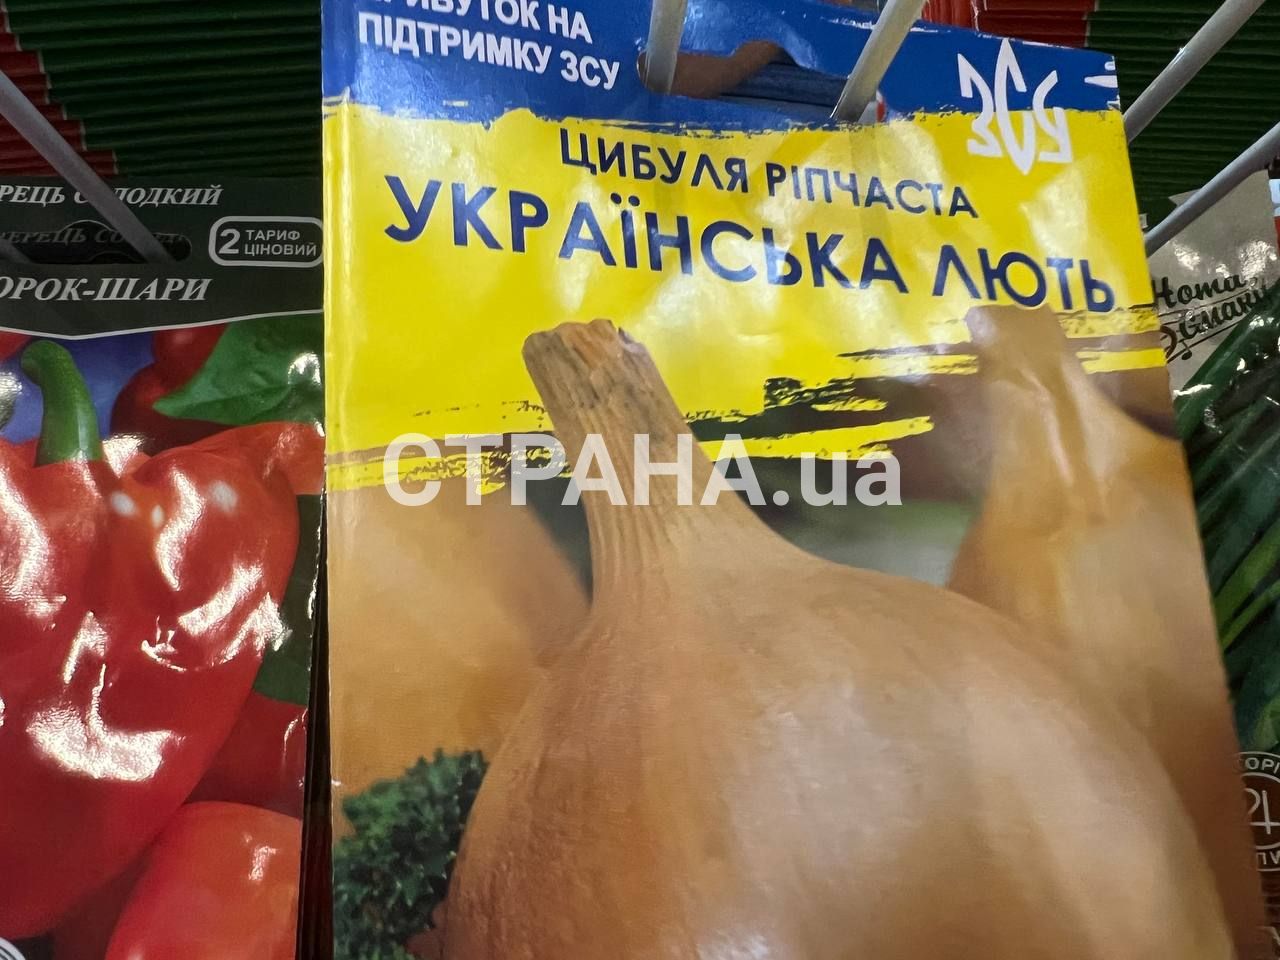 В Киеве продают семена с патриотическими названиями